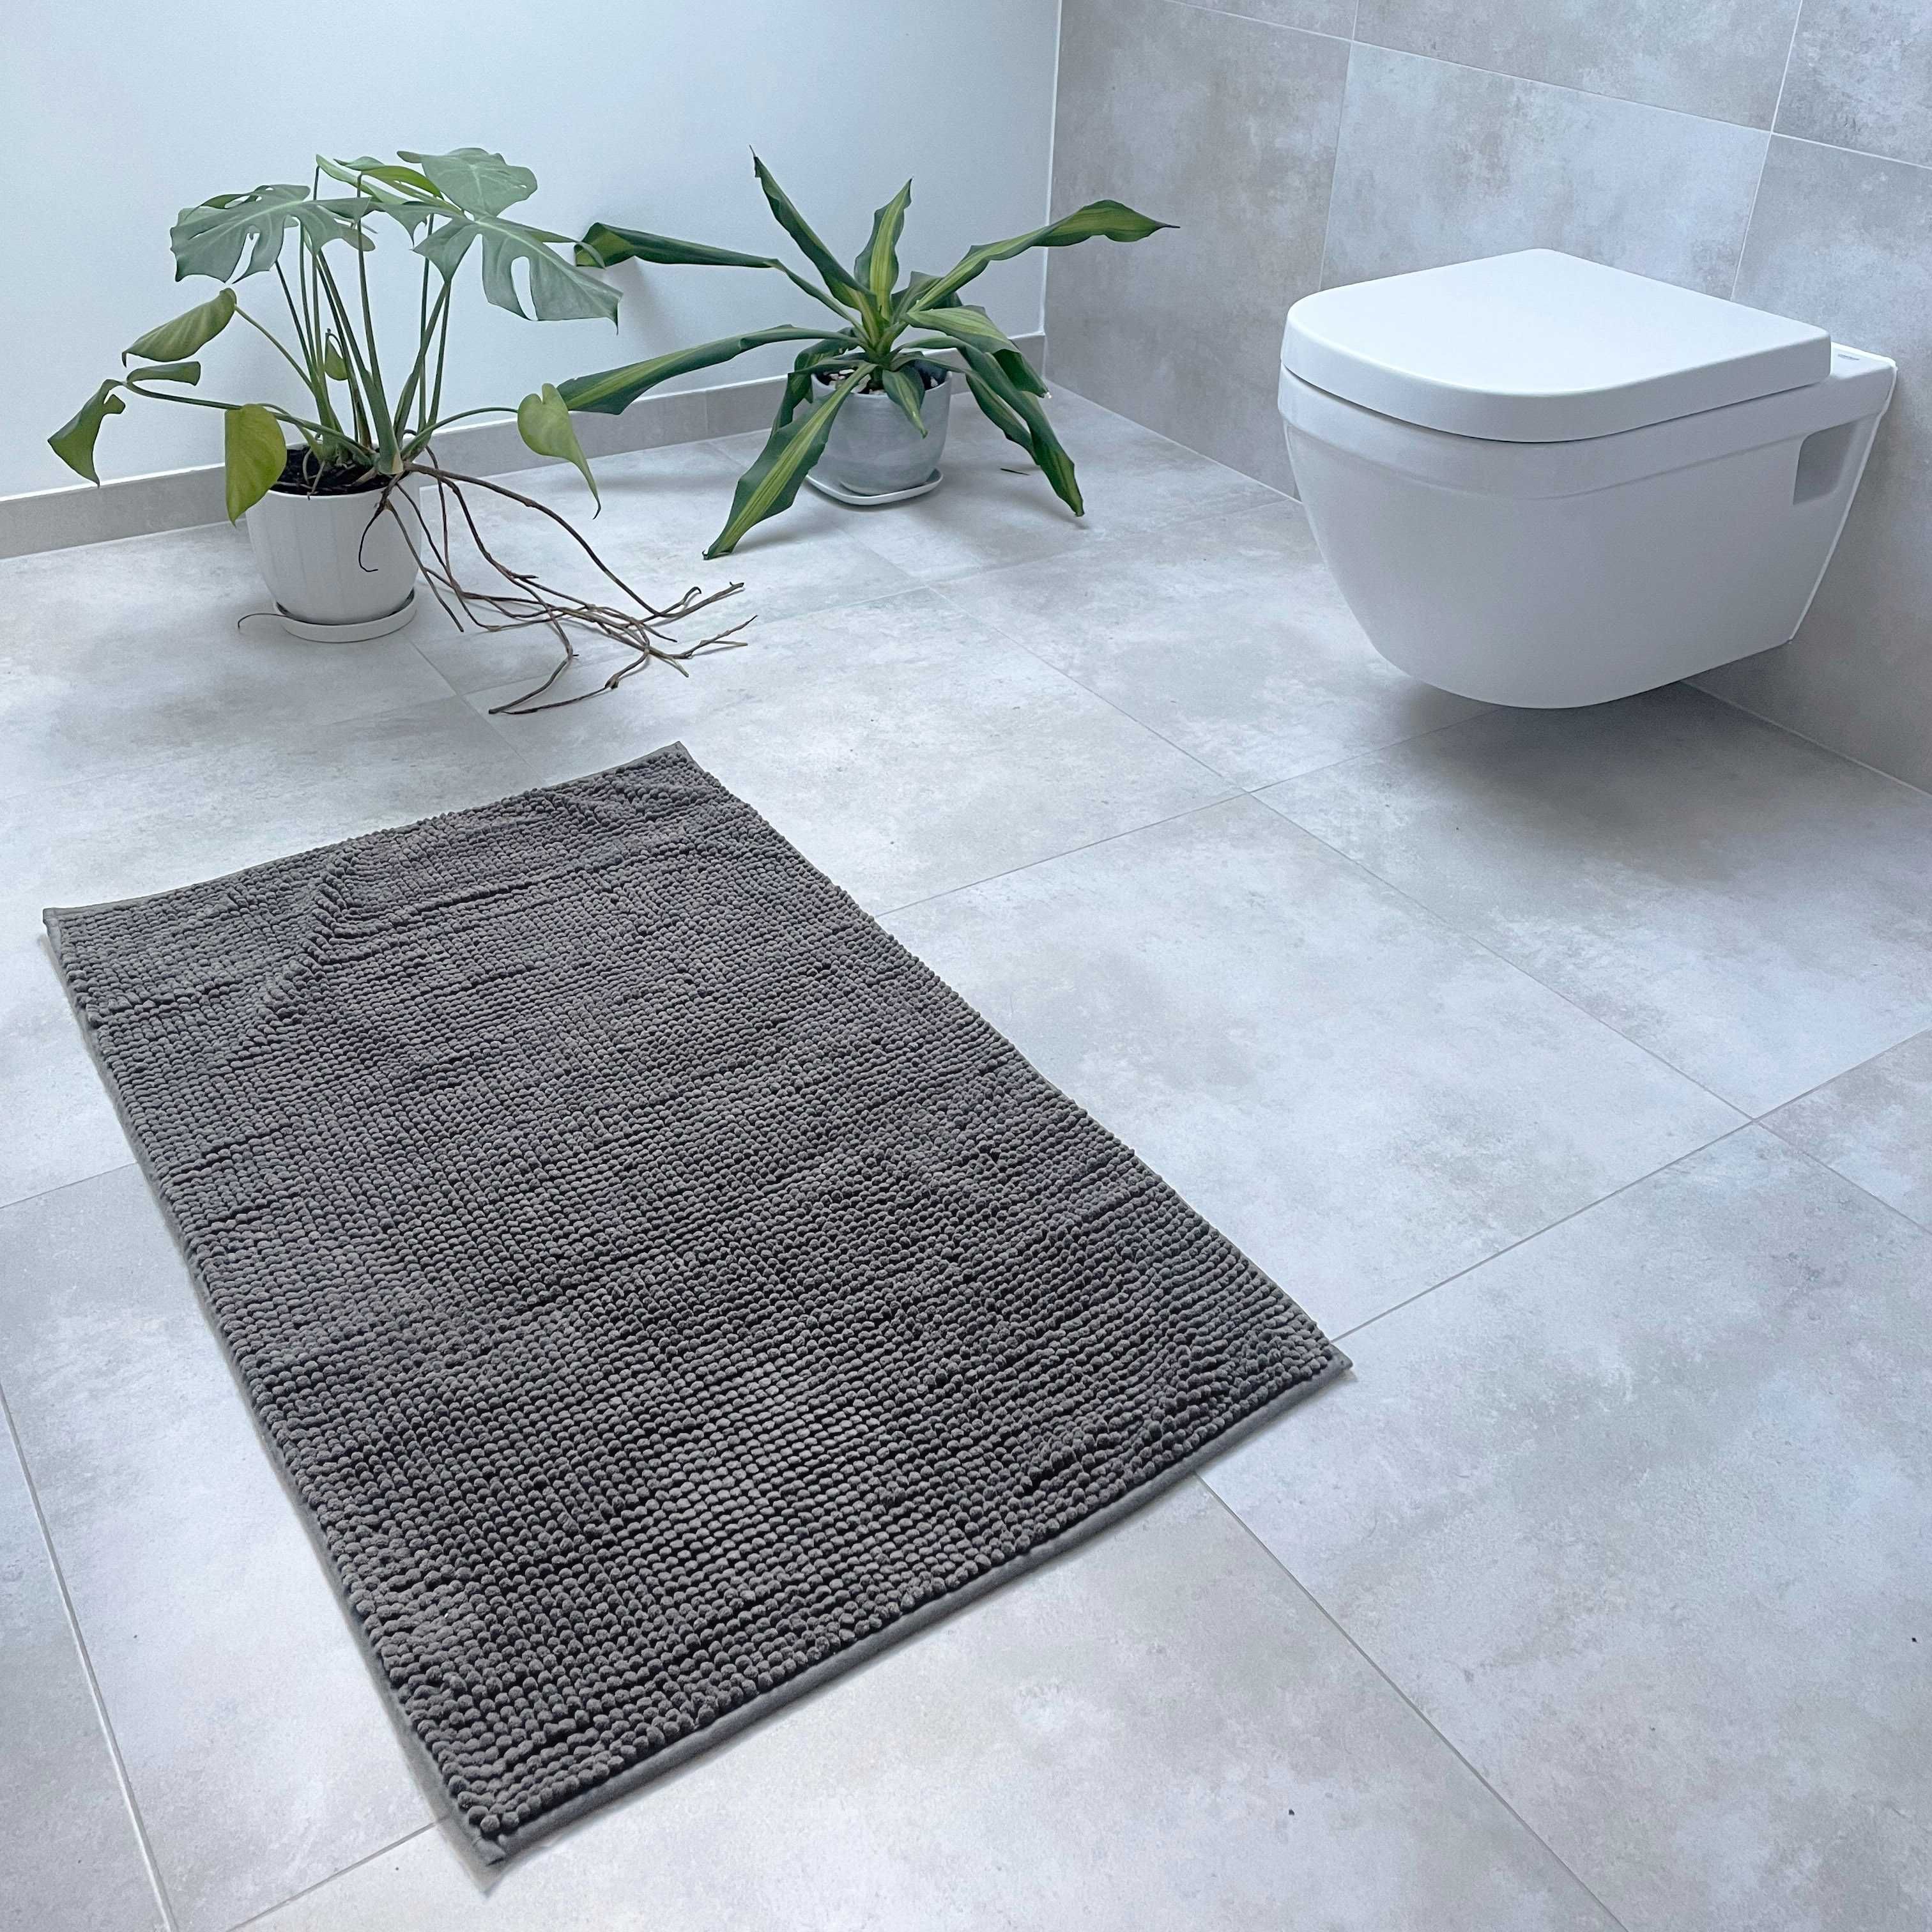 Dywanik łazienkowy dywan do łazienki pod toaletę wannę miękki 60x100cm